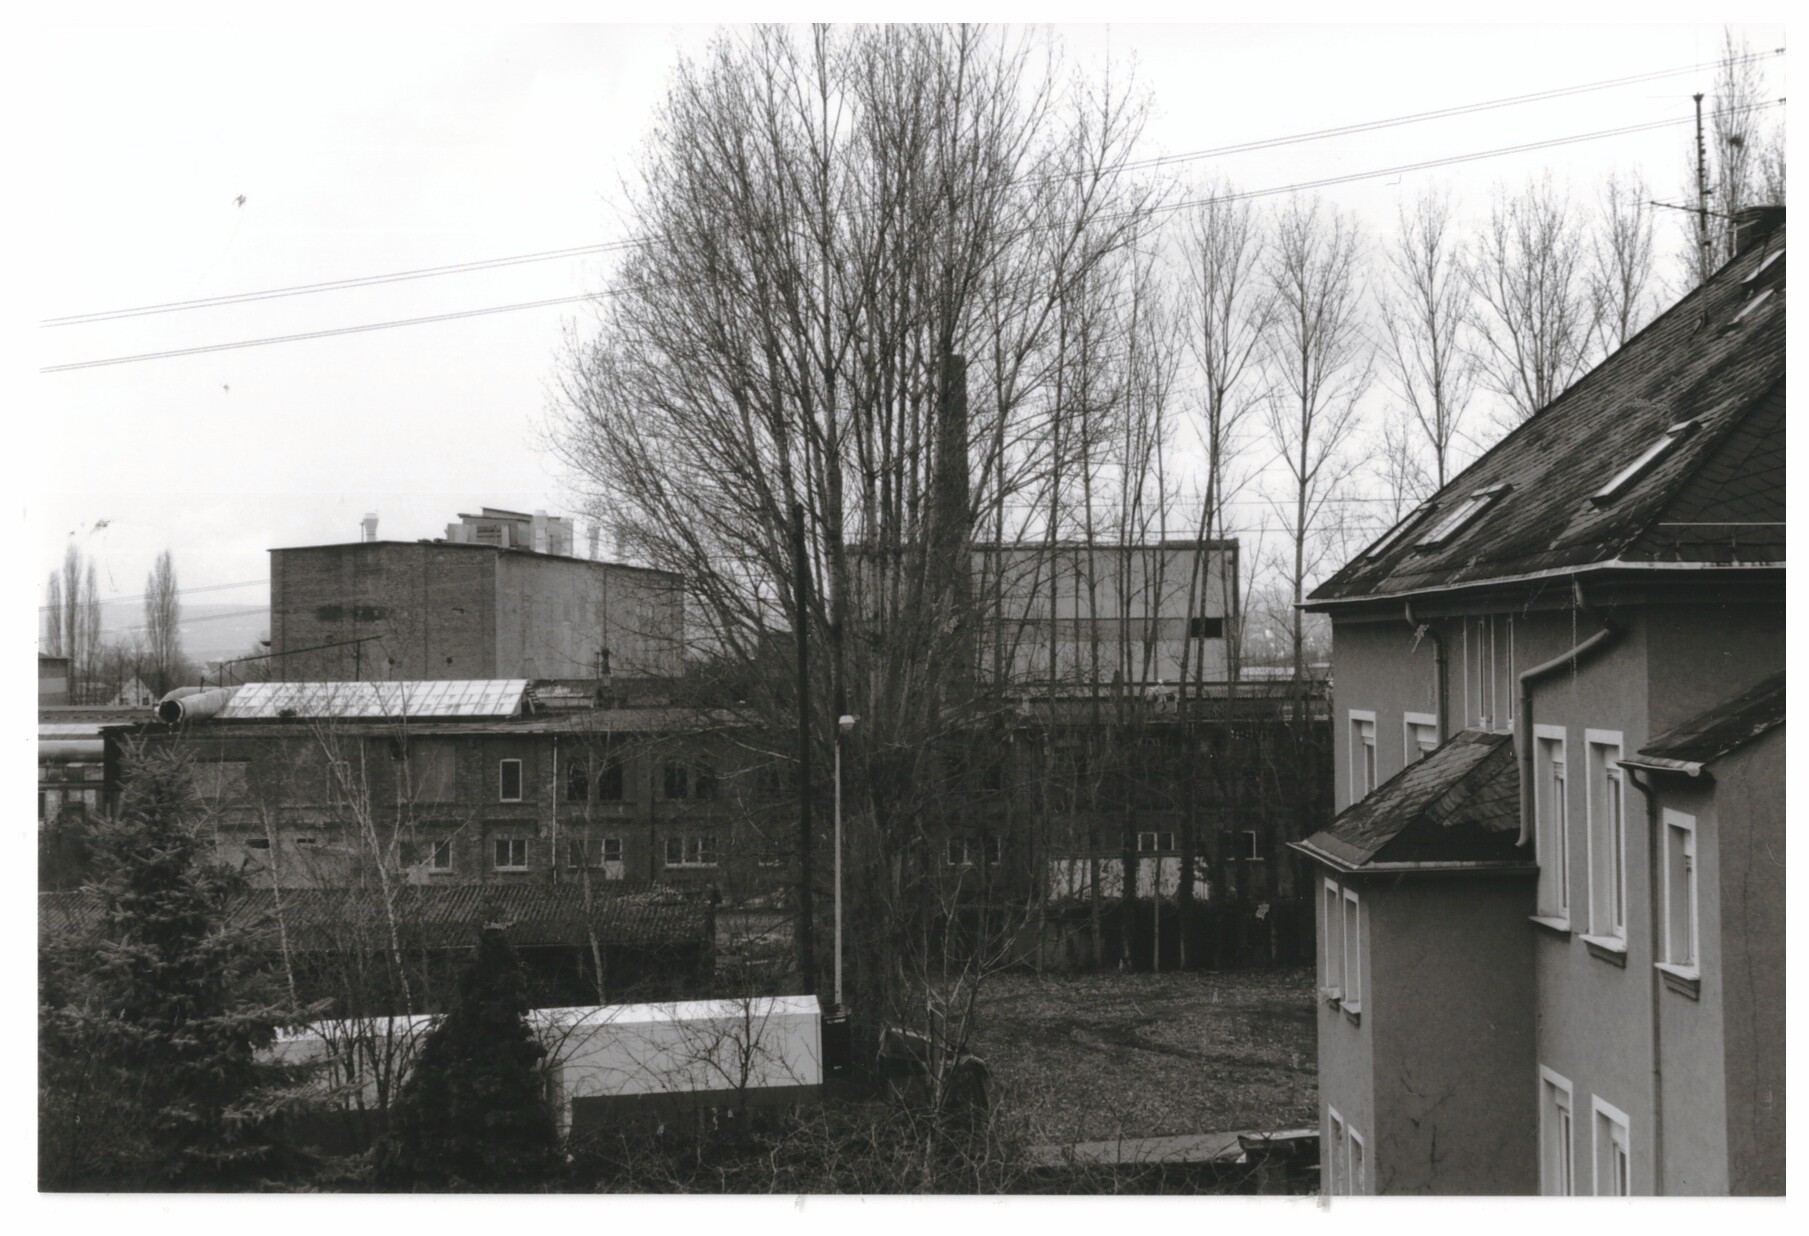 Werksgelände Didier vor dem Abriss 1998/99, Bendorf (Stiftung Sayner Hütte, Rheinisches Eisenkunstguss-Museum CC BY-NC-SA)